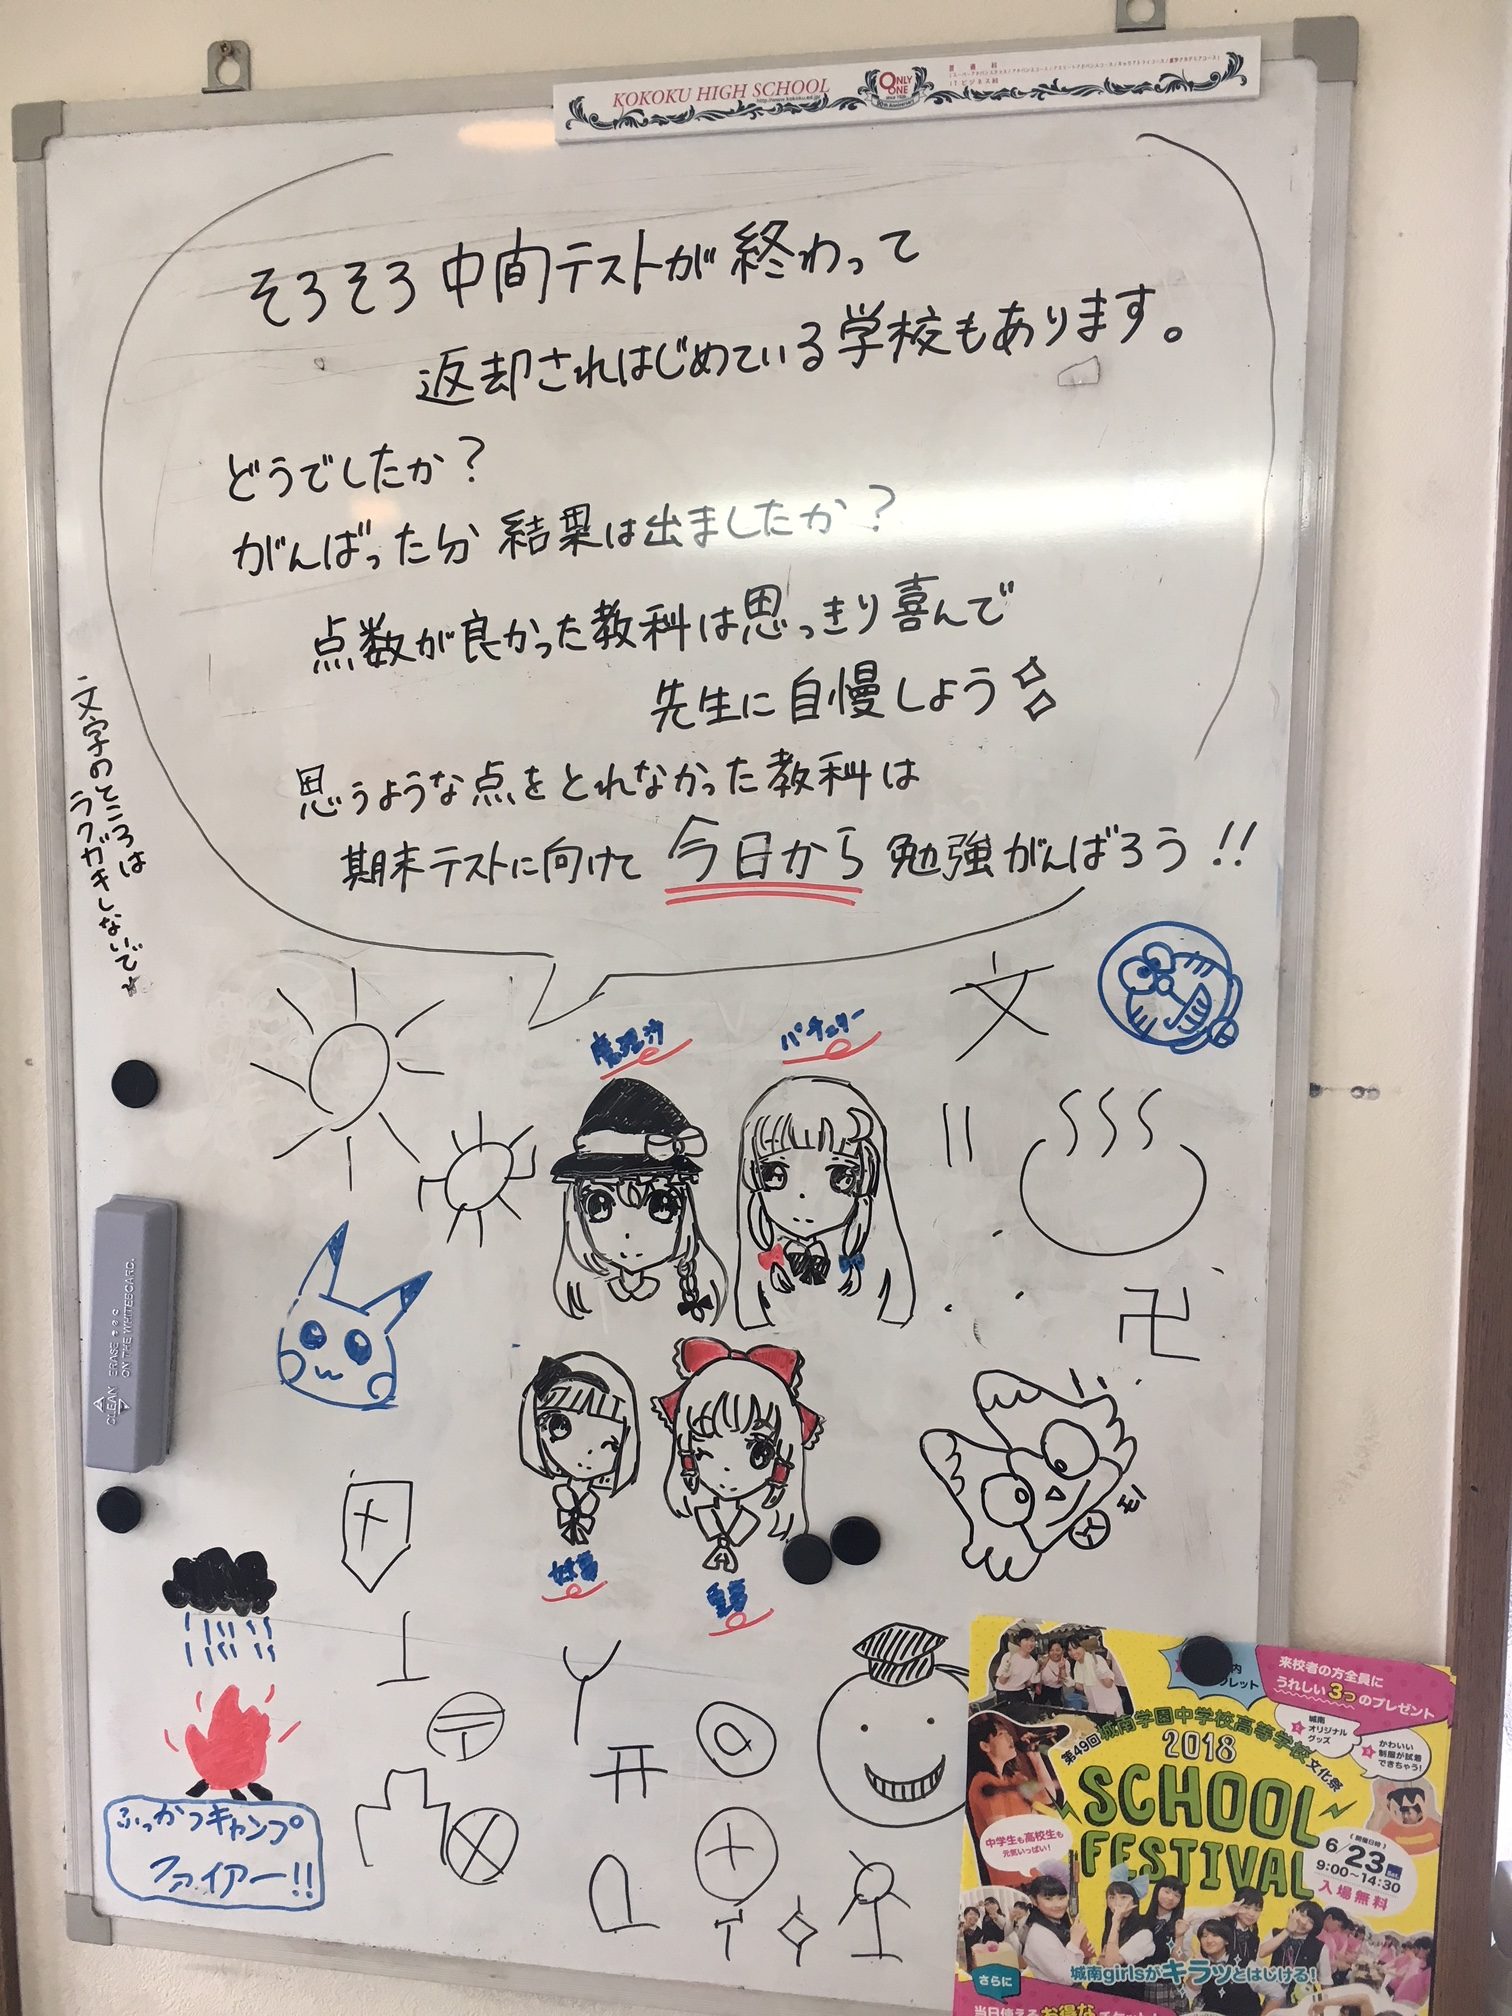 ホワイトボード第2弾 アップ学習会 沢ノ町教室 大阪の個別指導の学習塾ならアップ学習会